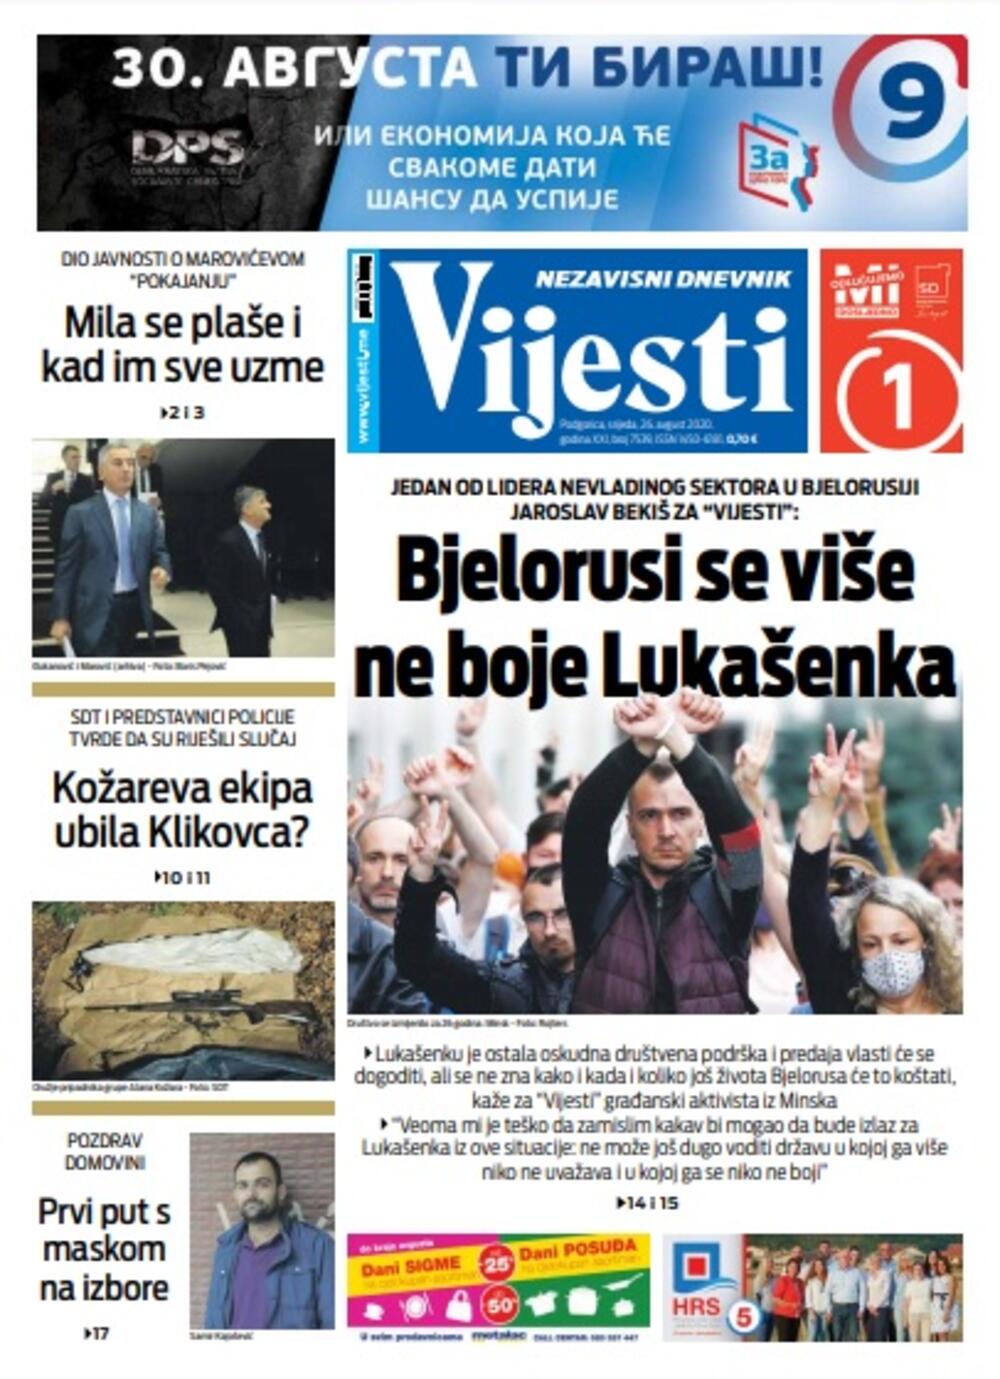 Naslovna strana "Vijesti" za srijedu 26. avgust 2020. godine, Foto: Vijesti